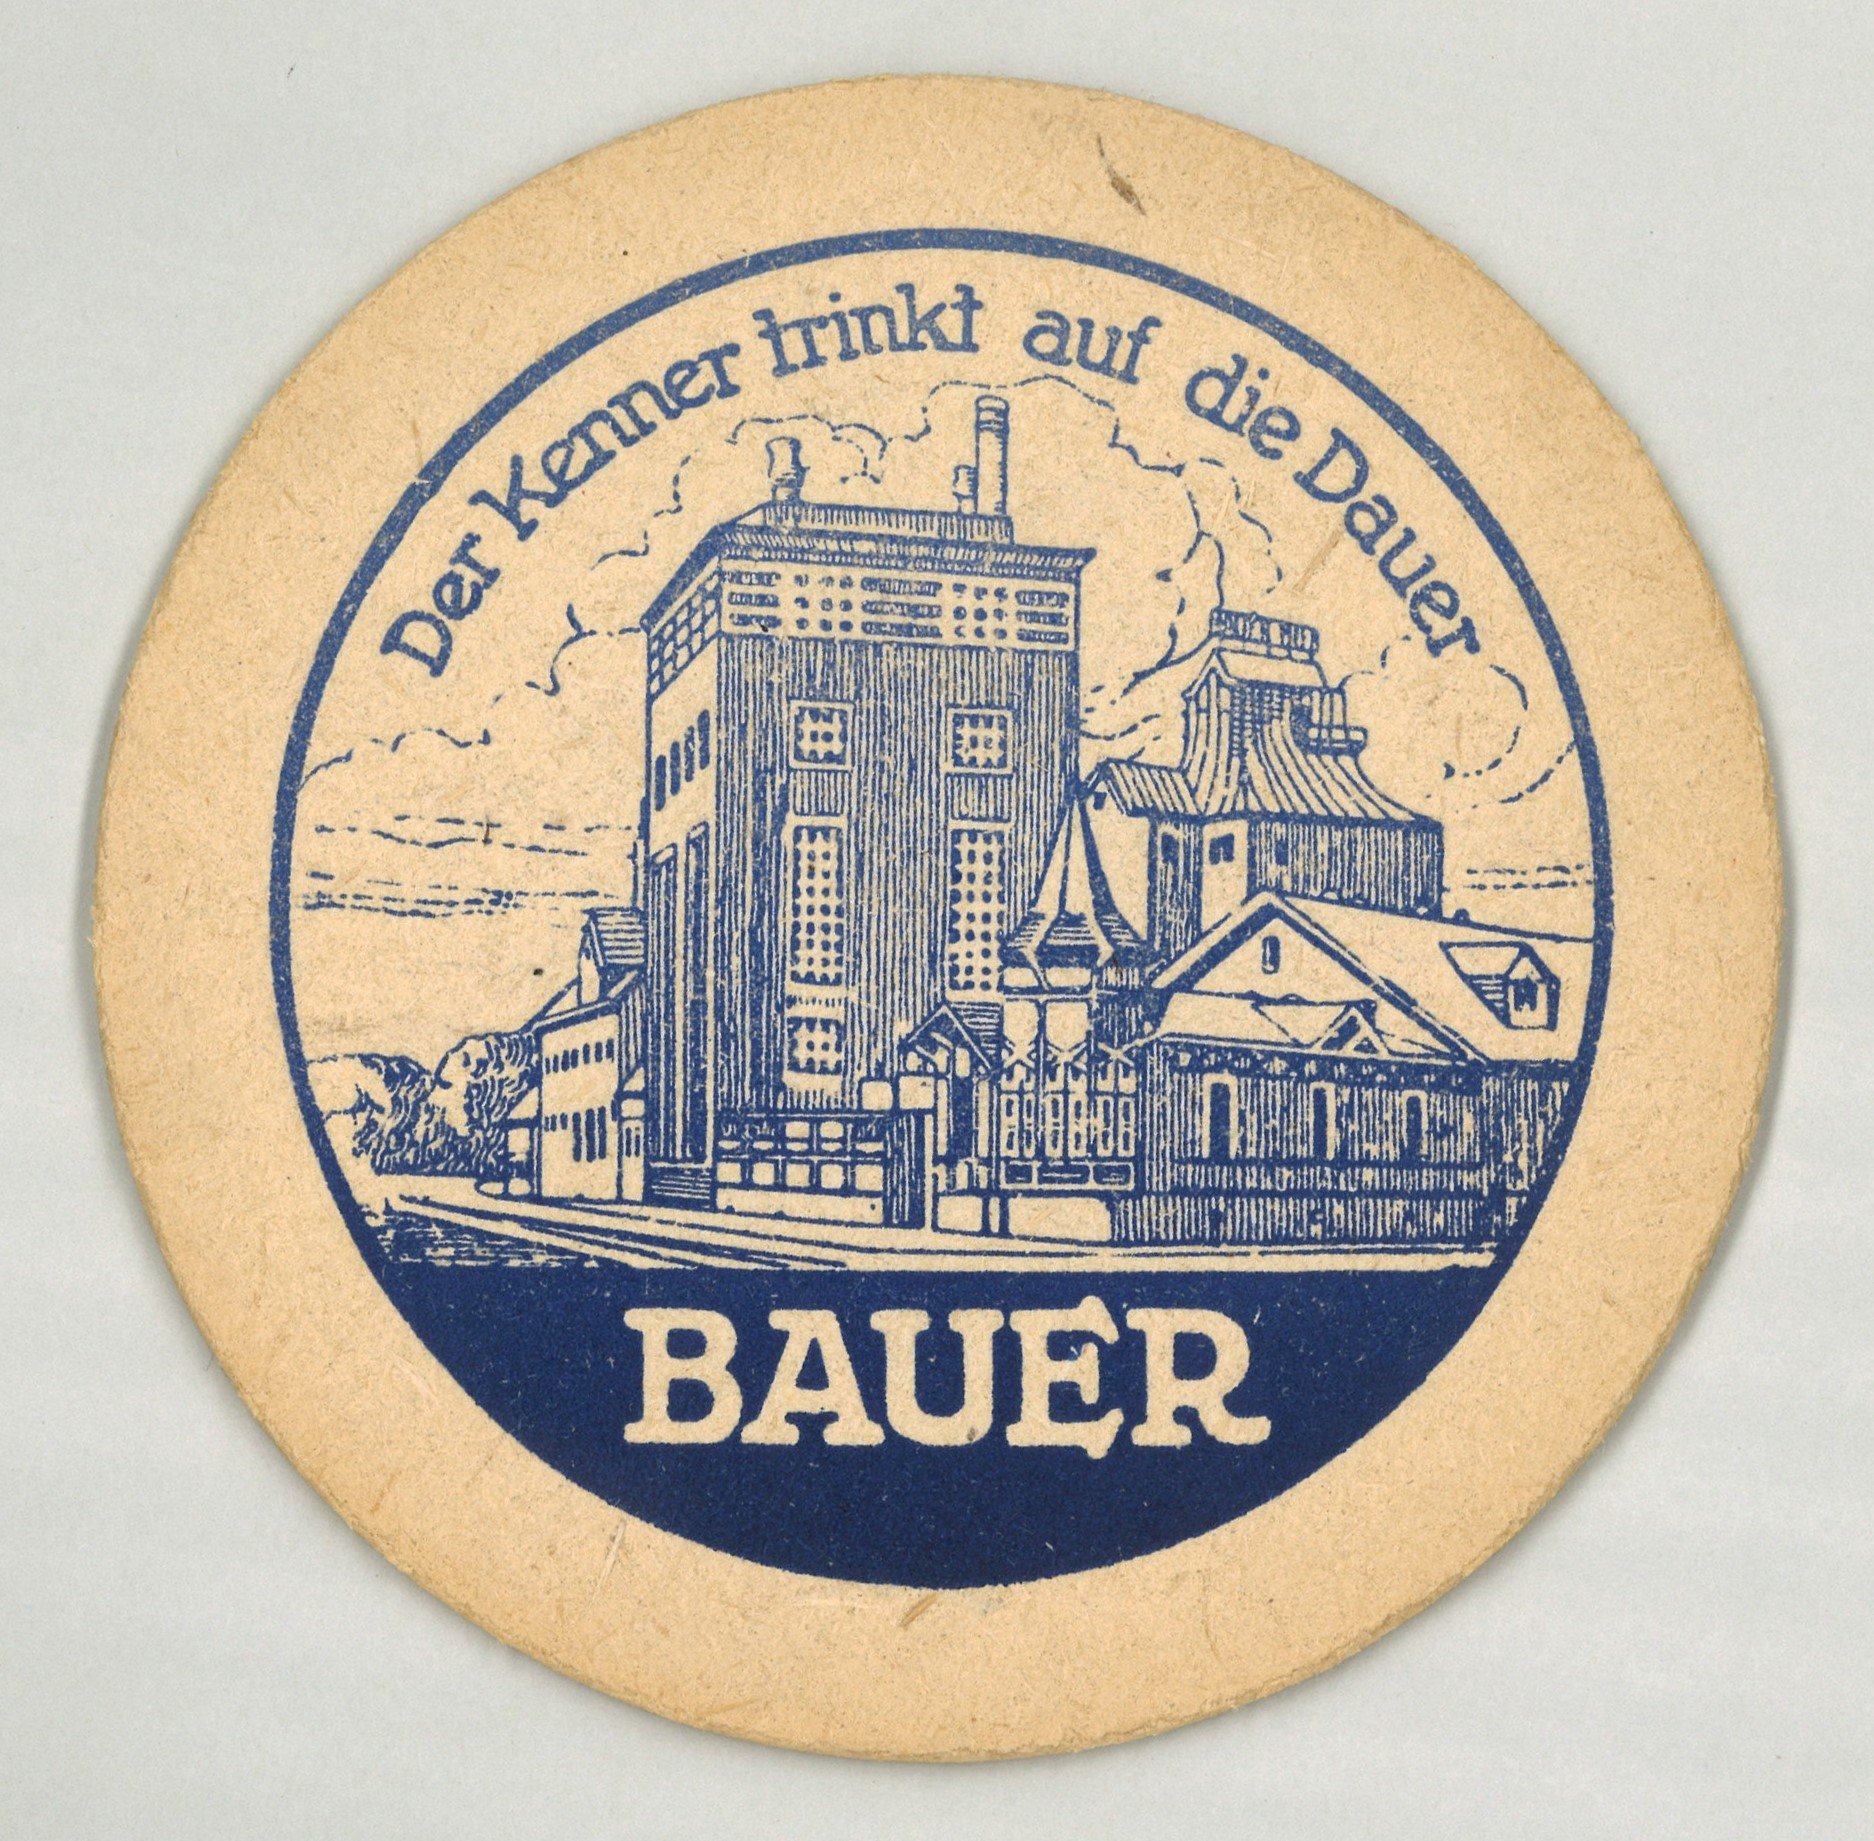 Leipzig: Brauerei Bauer (Landesgeschichtliche Vereinigung für die Mark Brandenburg e.V., Archiv CC BY)